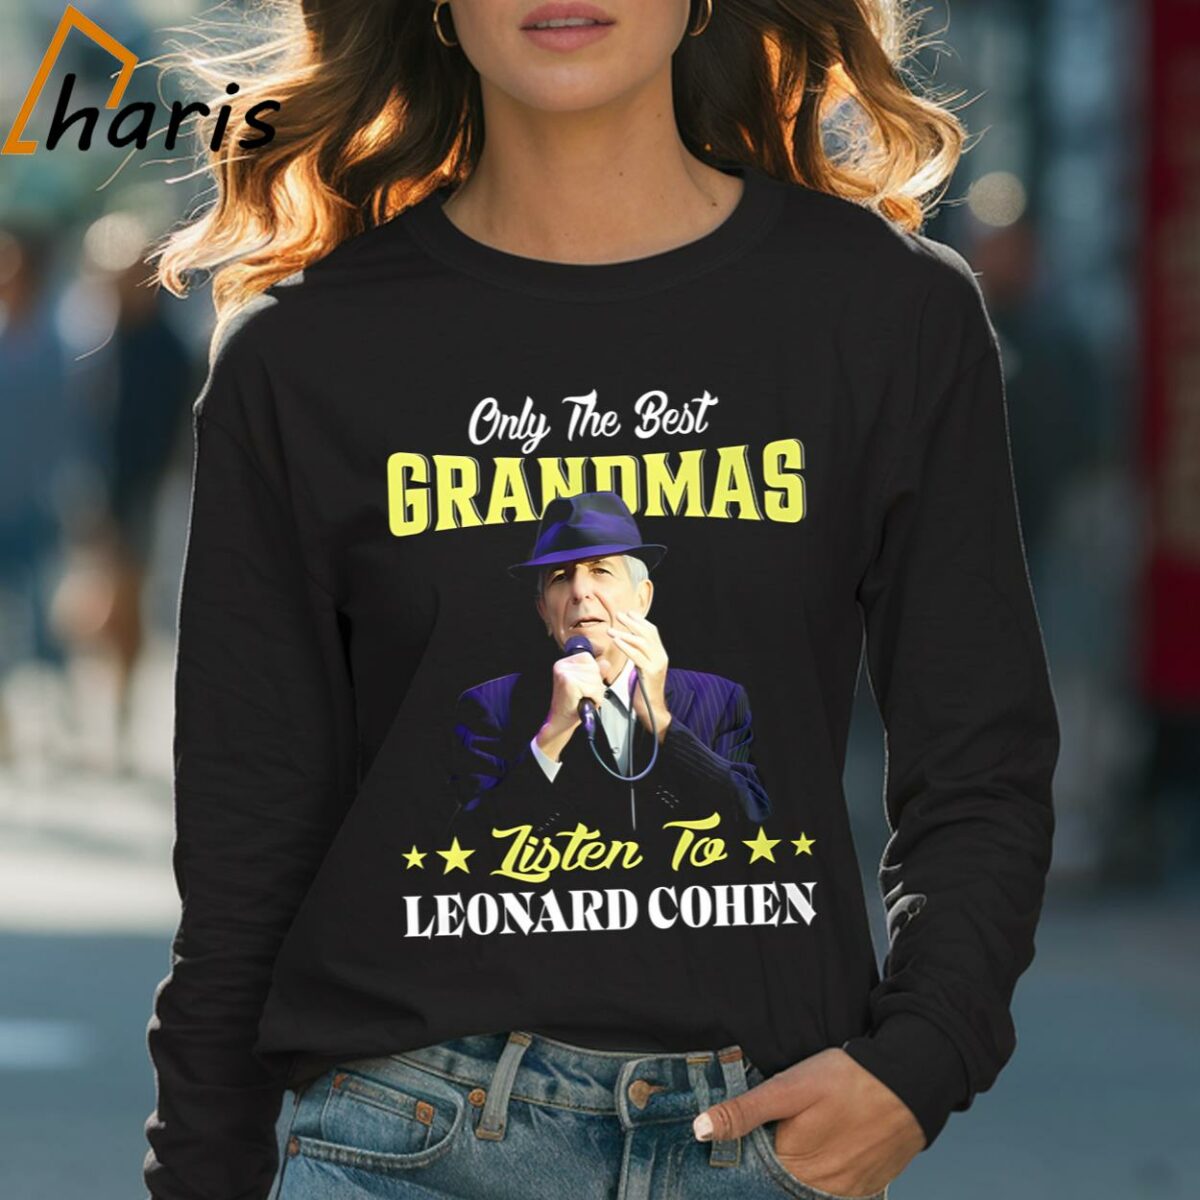 Only The Best Grandmas Listen To Leonard Cohen T shirt 4 Long sleeve shirt